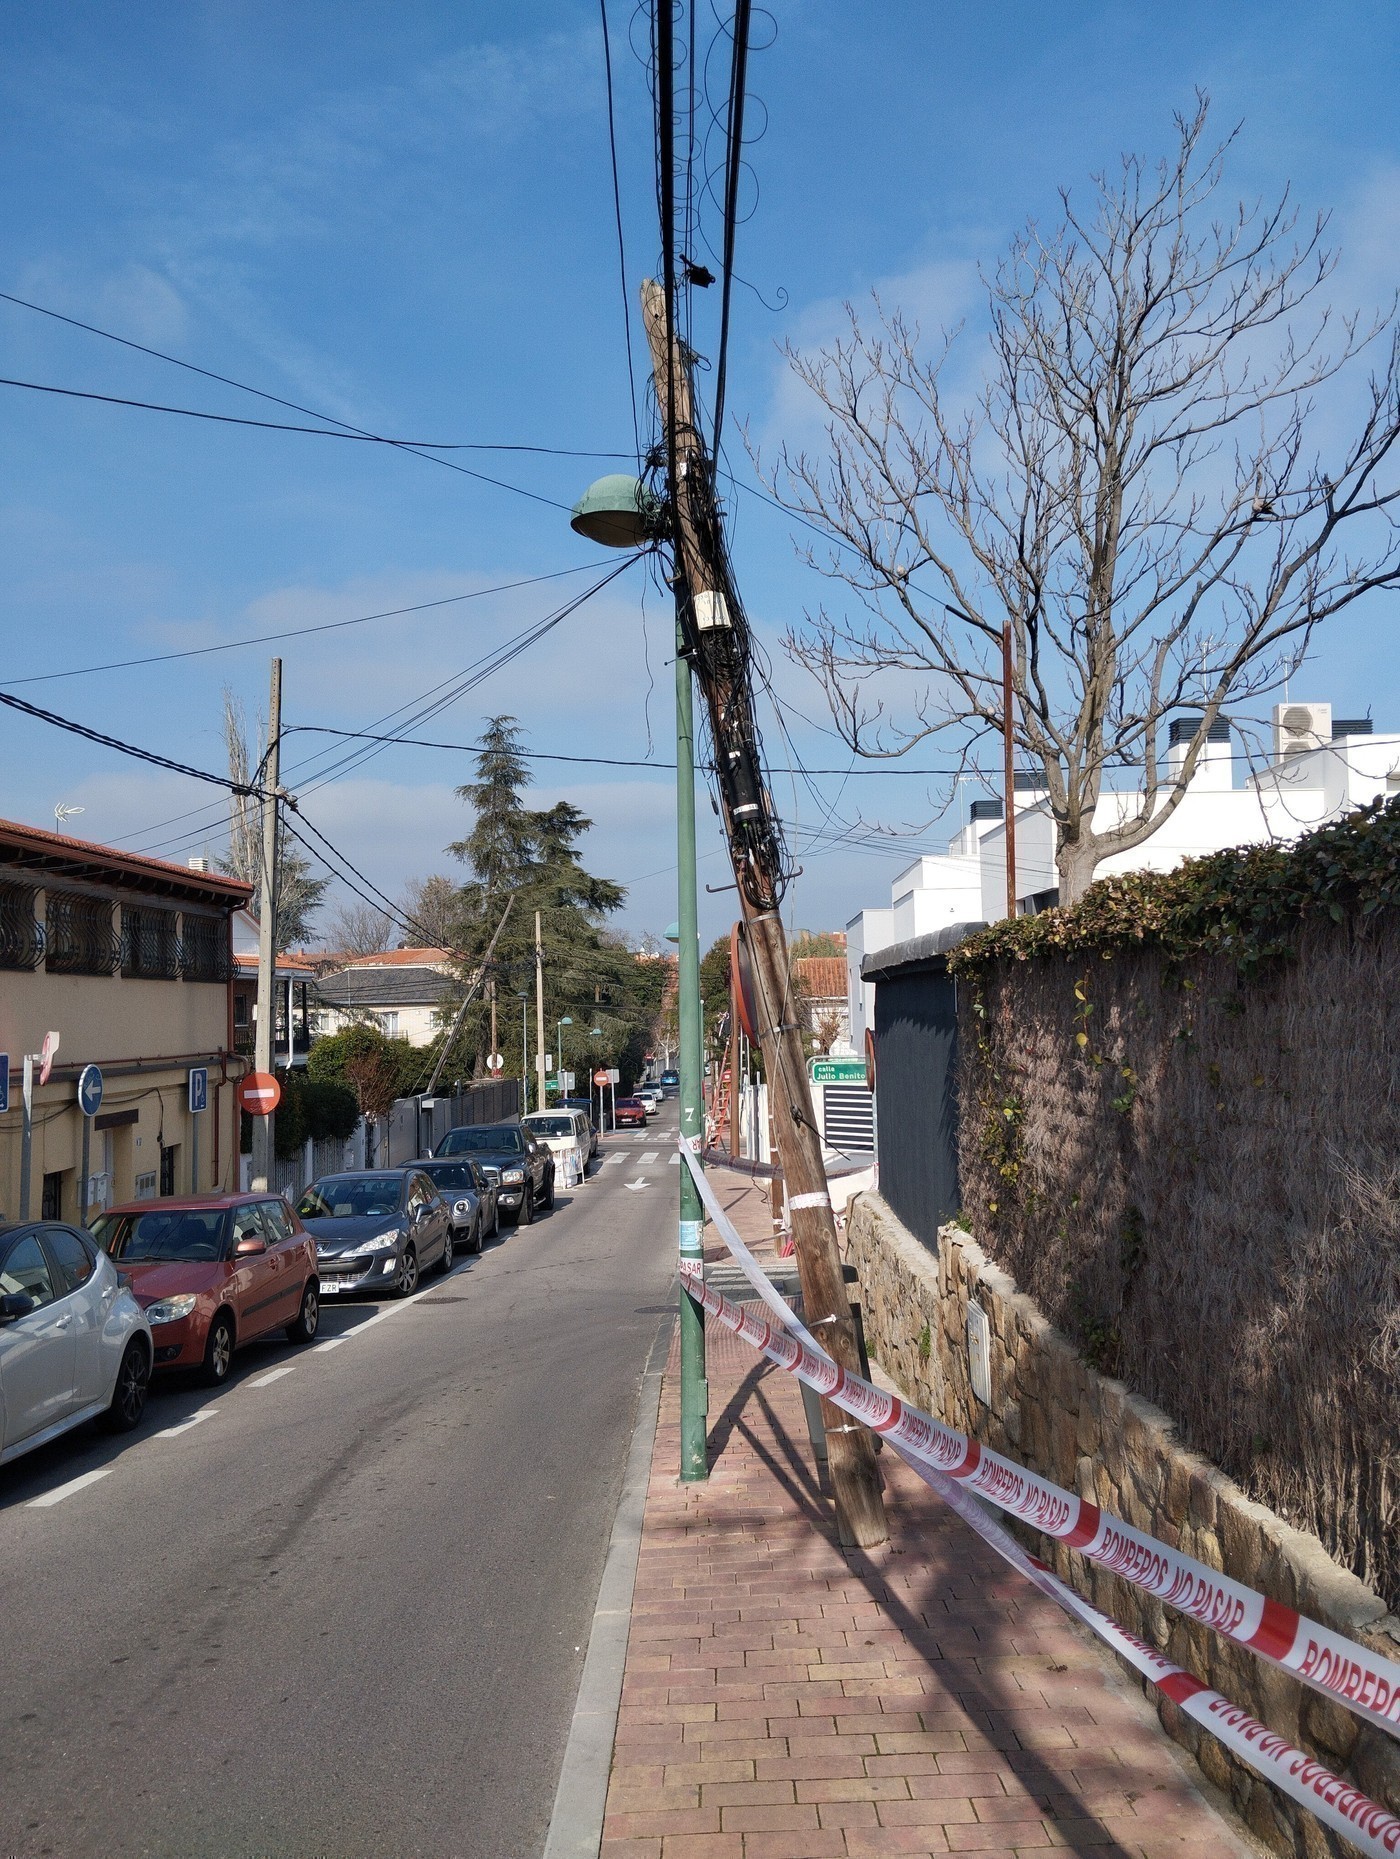 postes de teléfono caídos en el barrio de los Horcajos